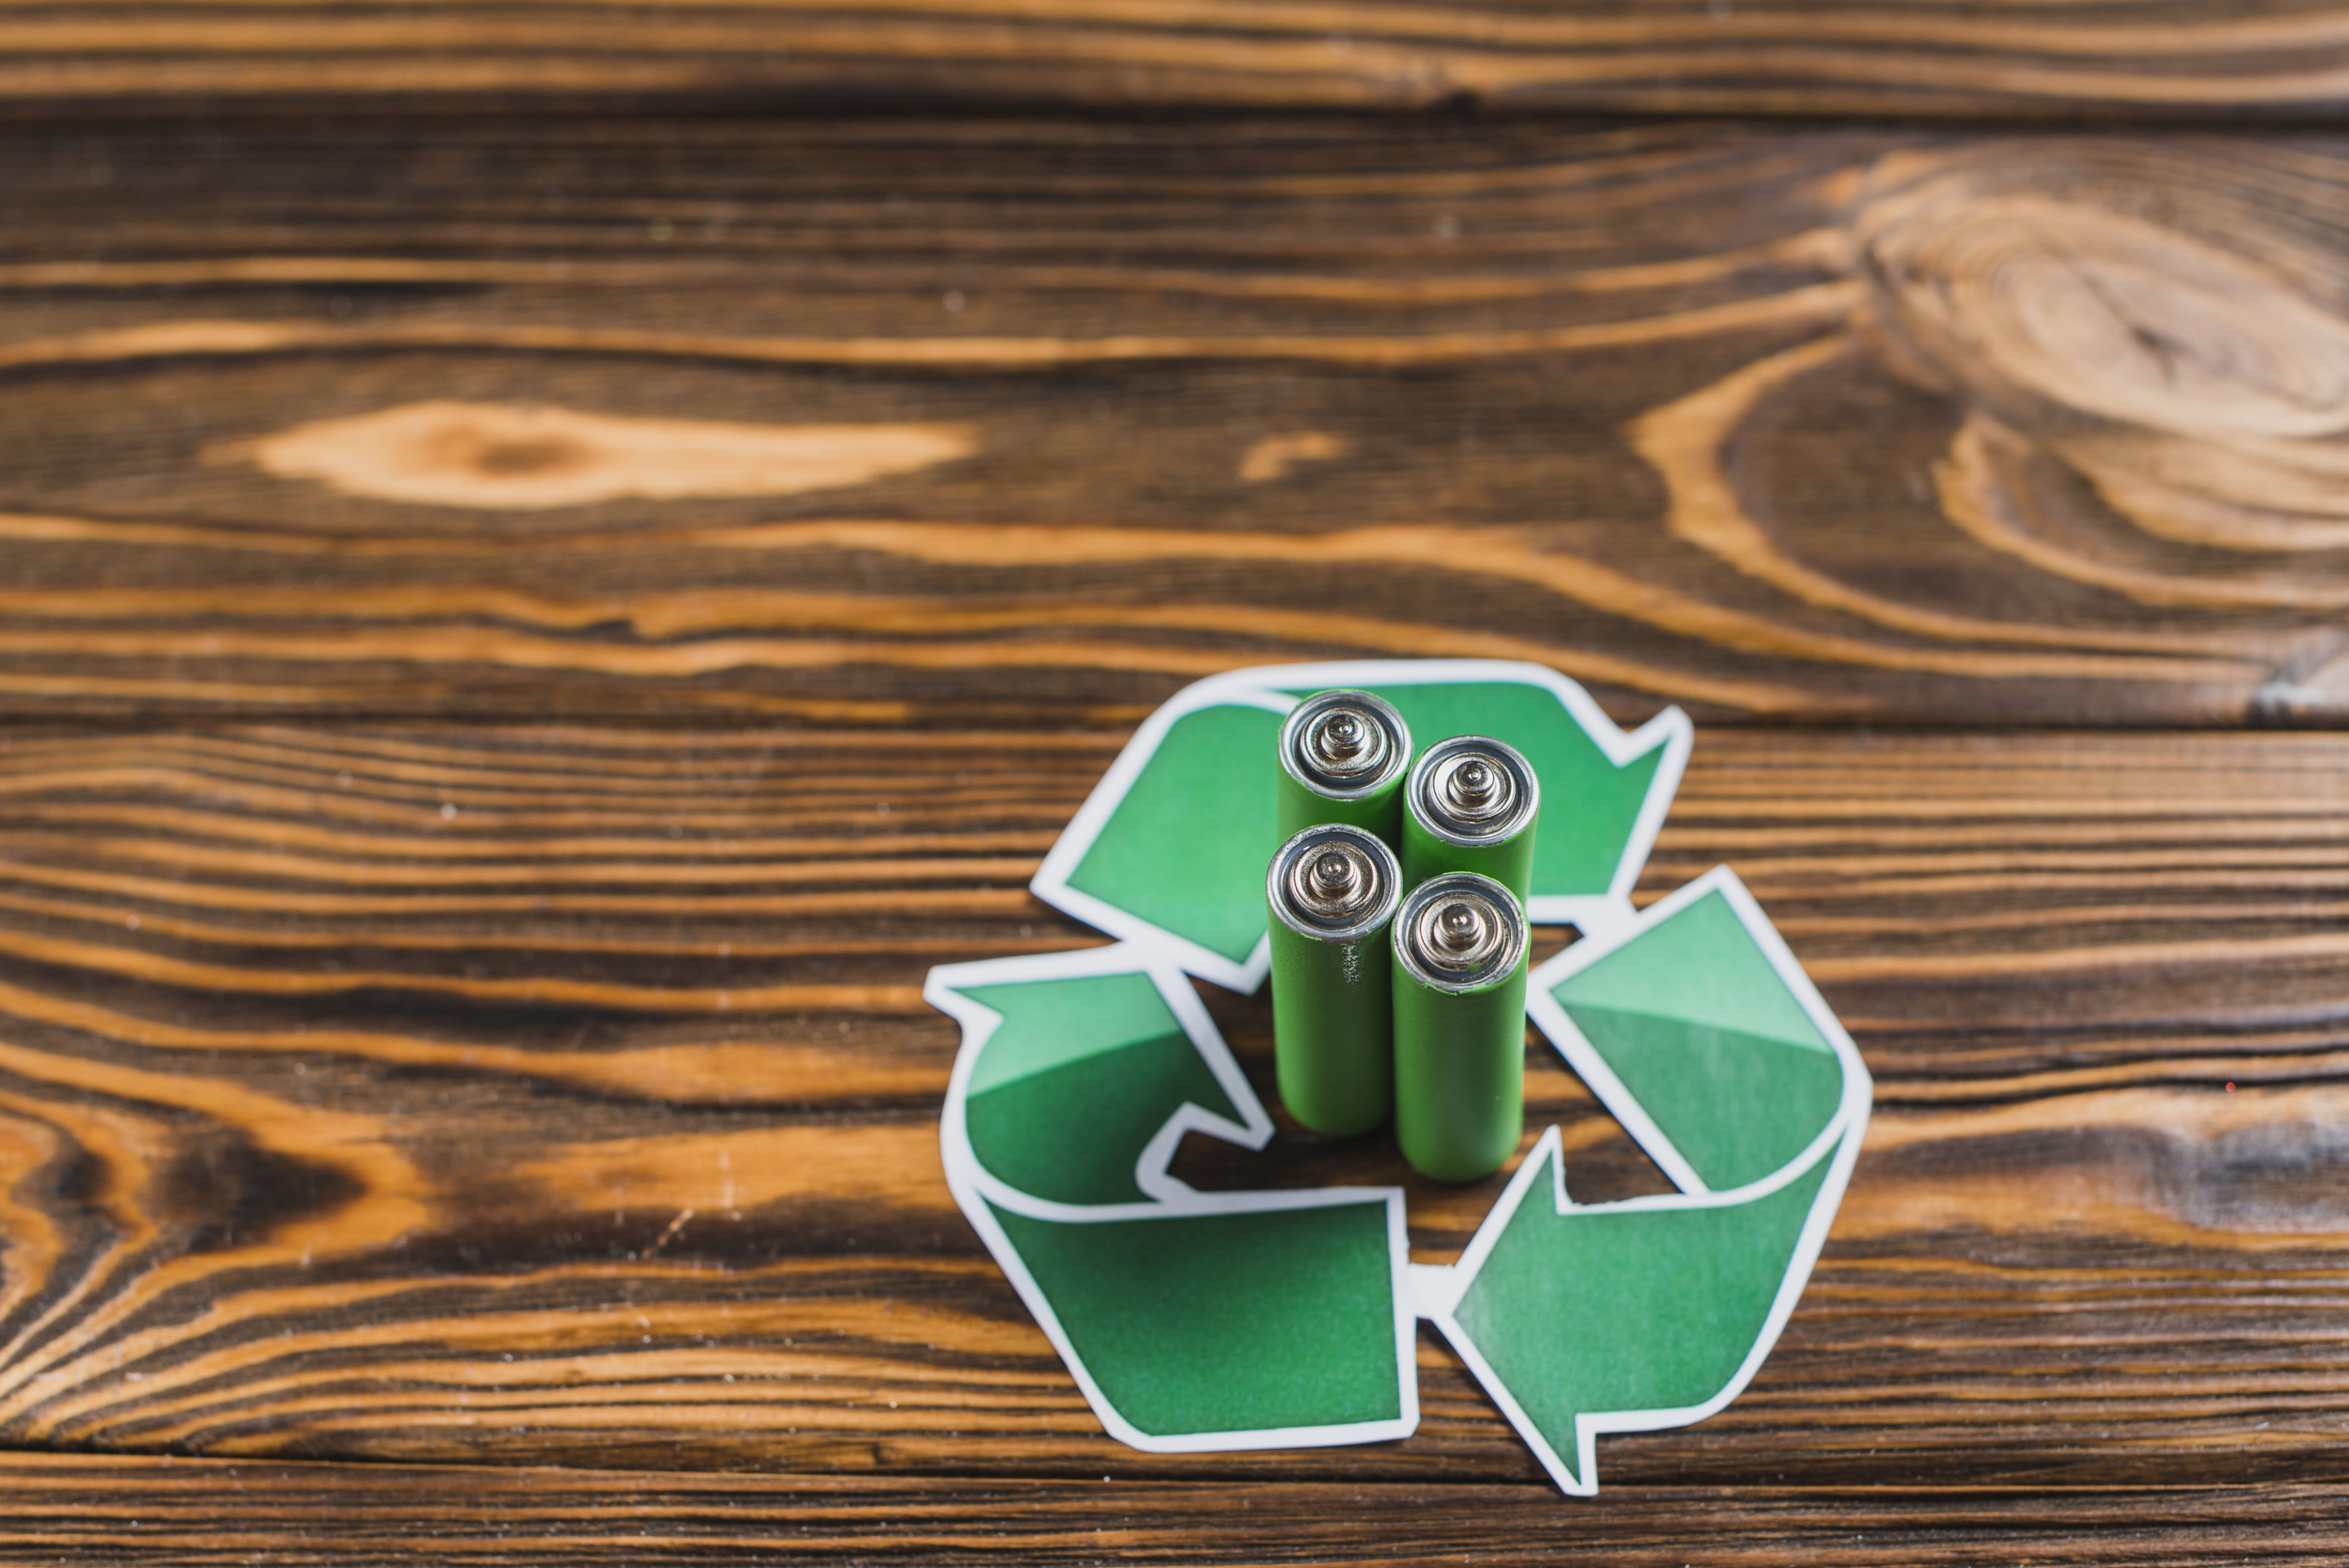 Los esfuerzos de reciclaje de la industria para hacer pilas más sustentables